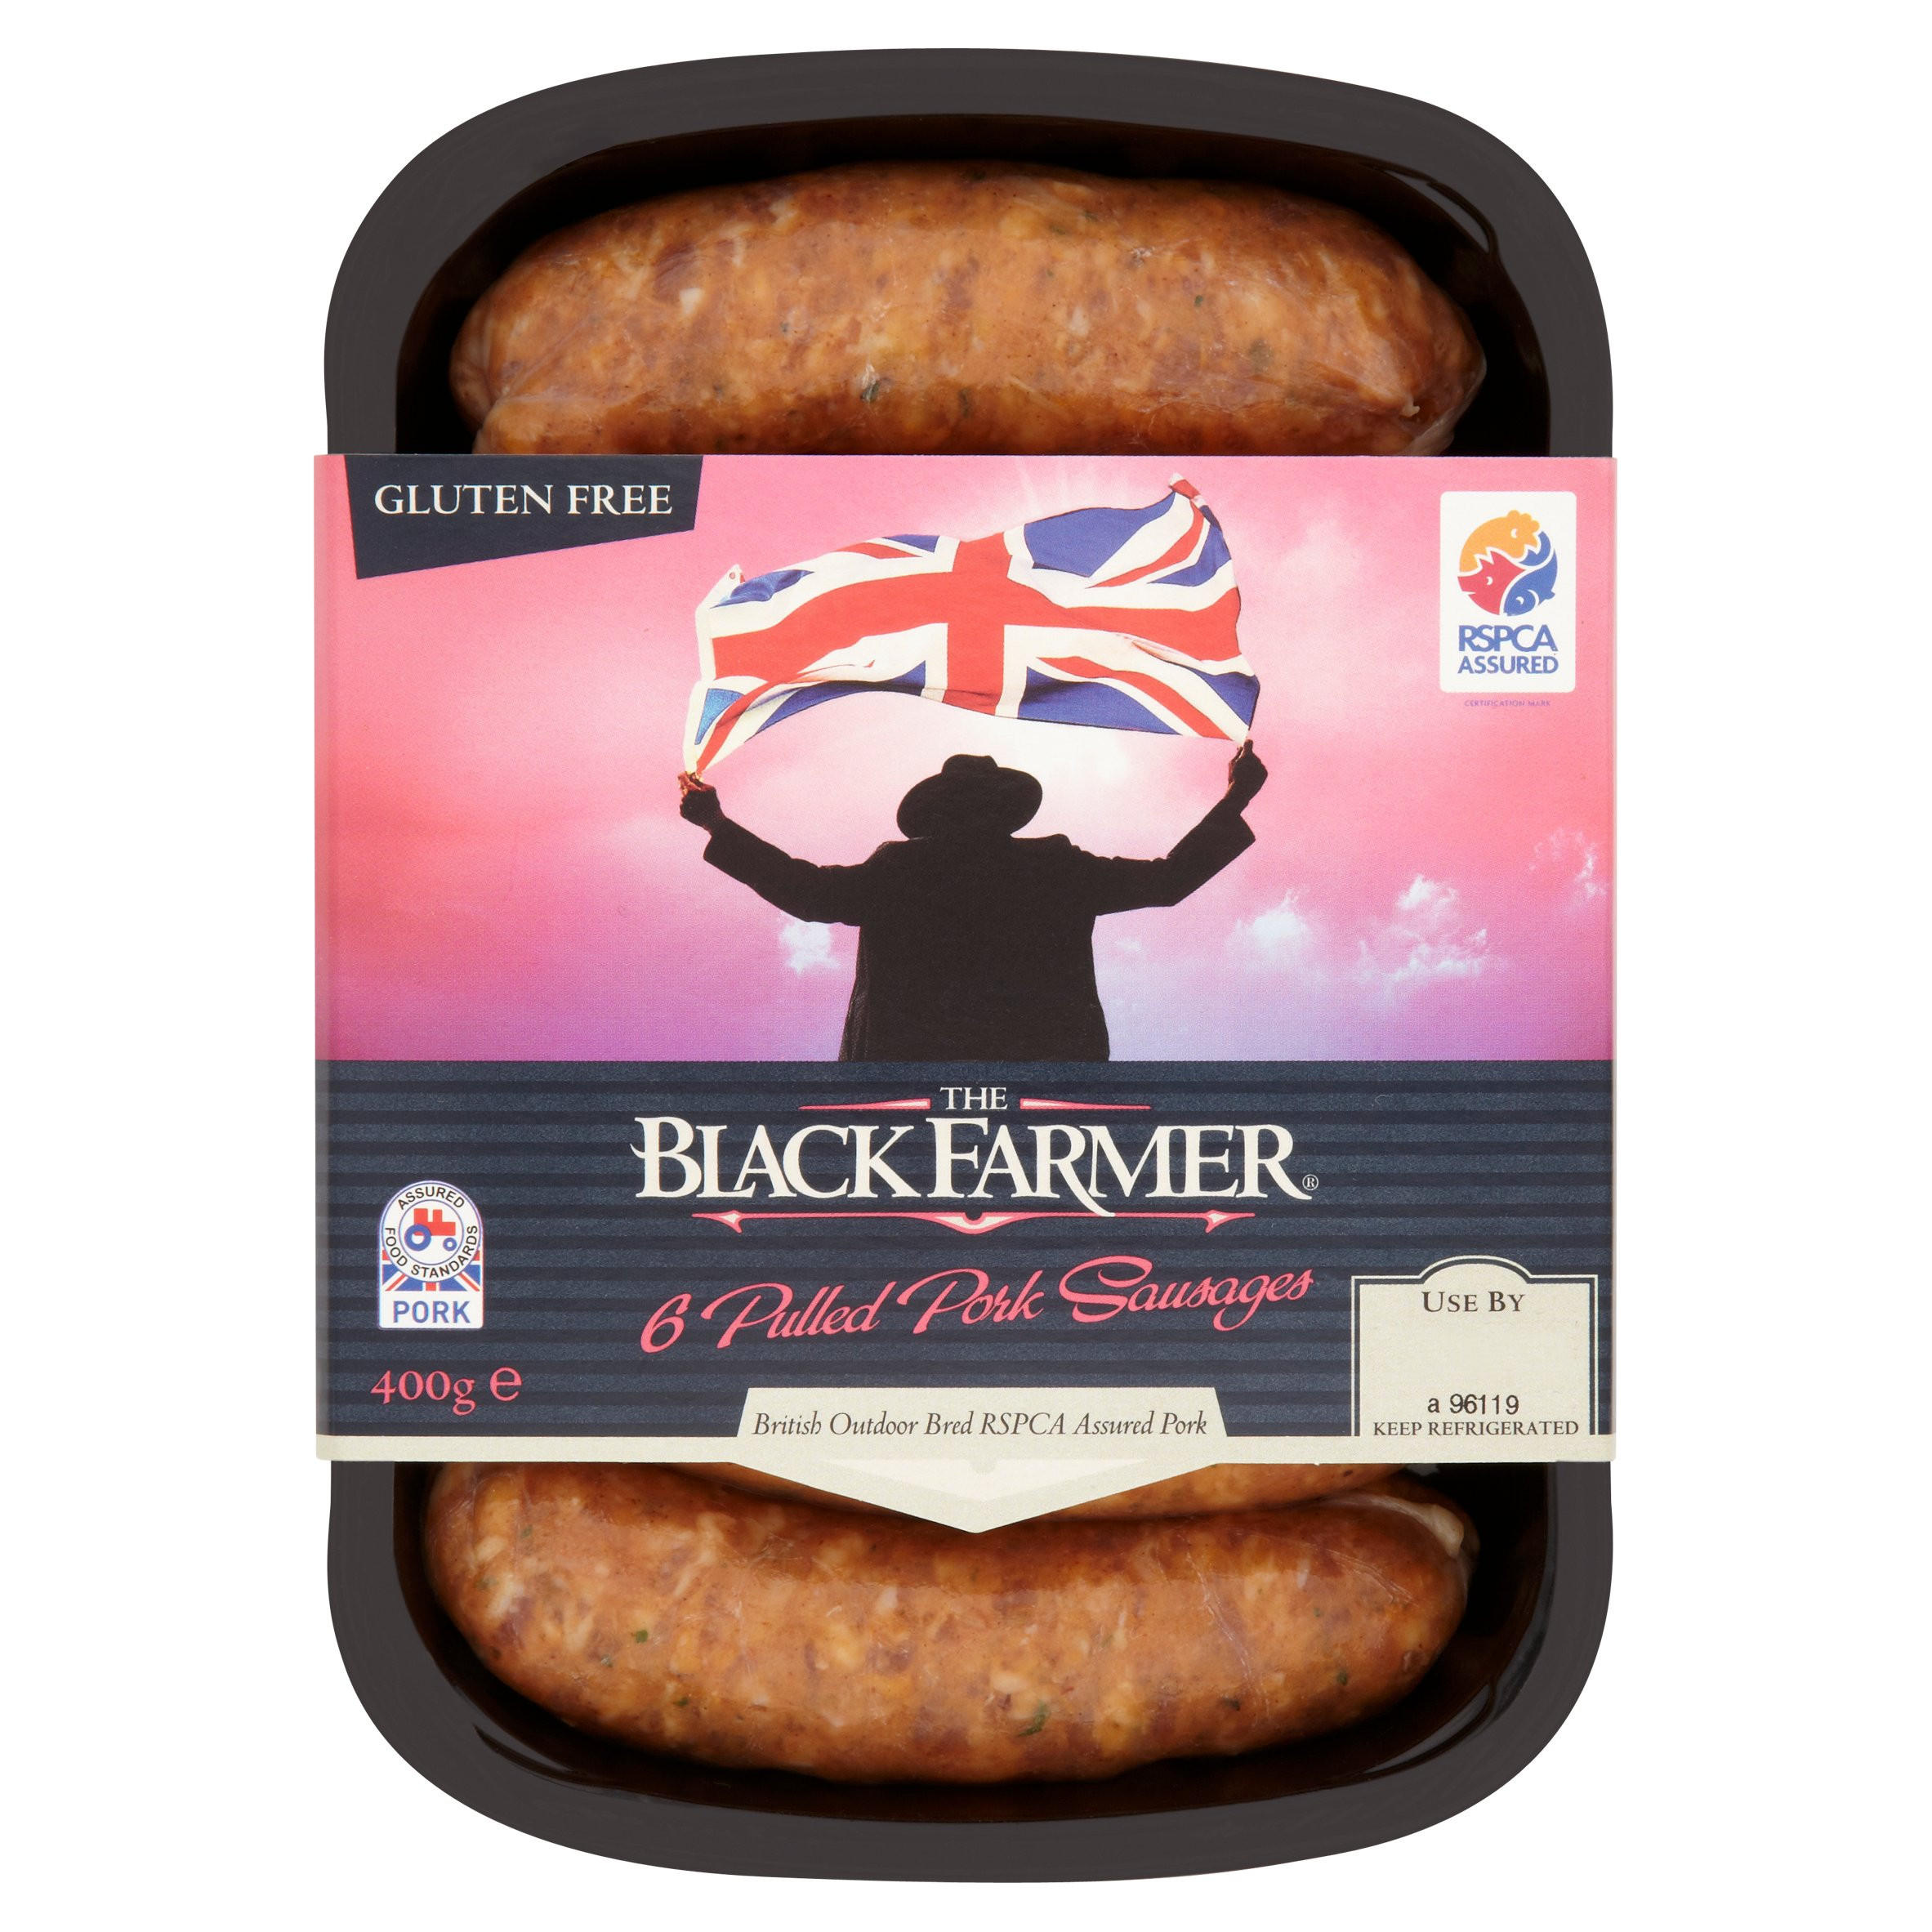 The Black Farmer 6 Pulled Pork Sausages 400g Sausages Iceland Foods 